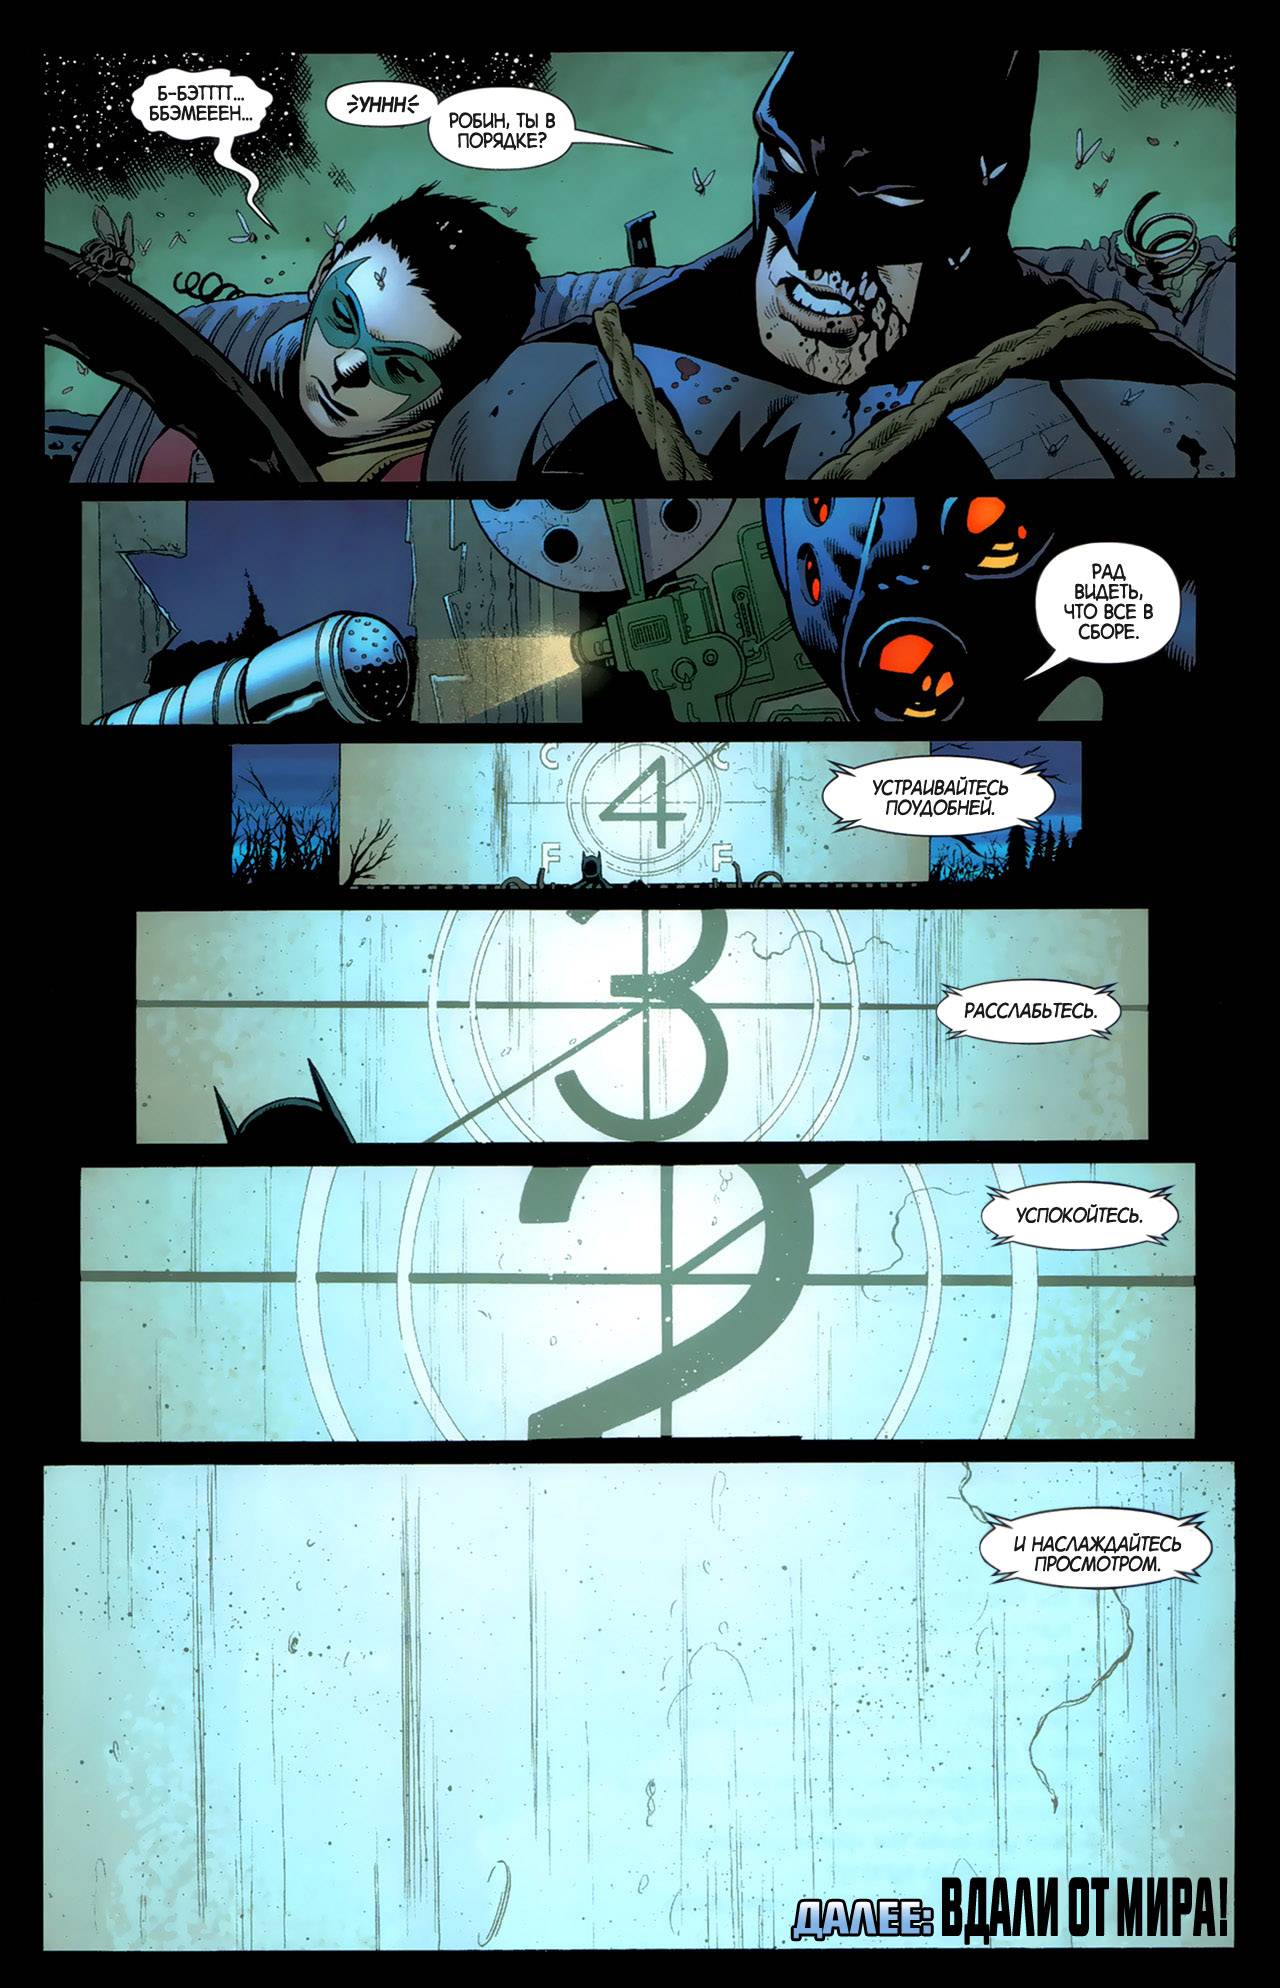 Бэтмен и Робин №3 онлайн